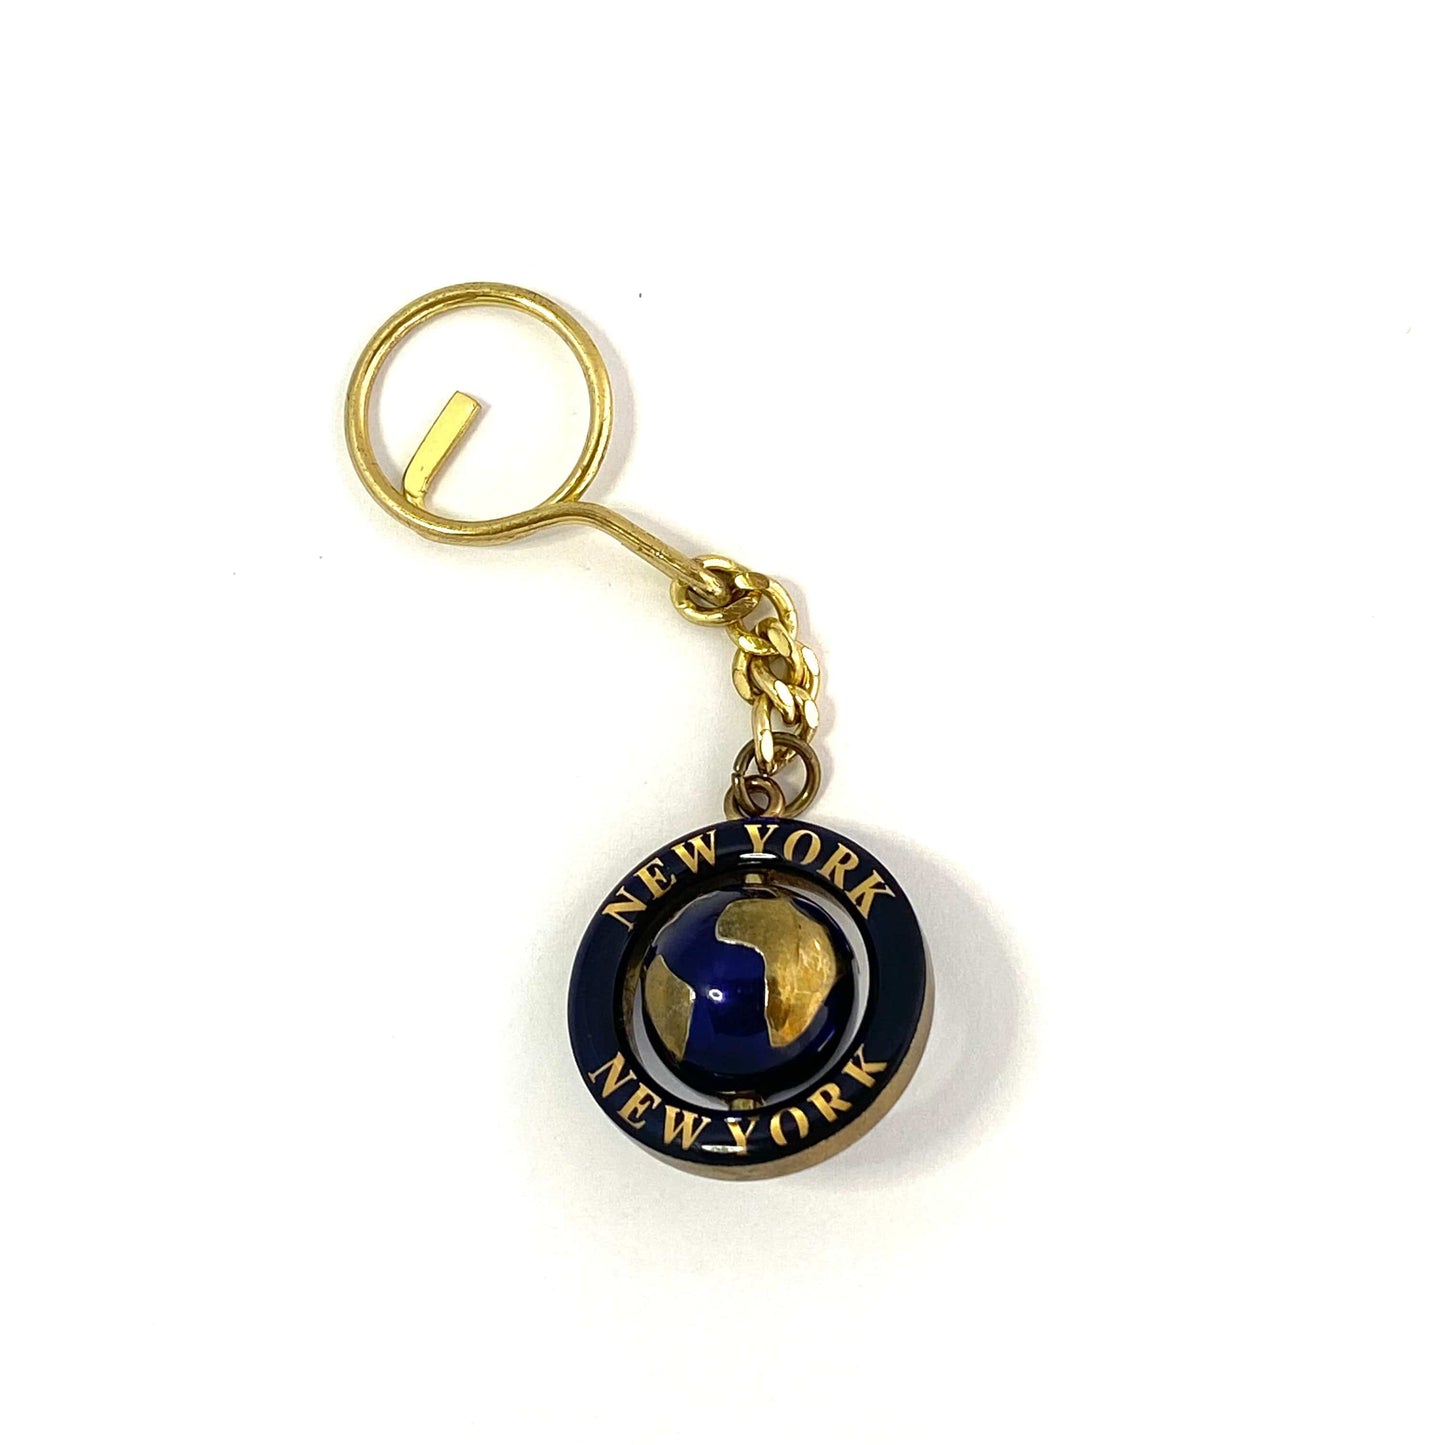 “New York” Goldtone Spinner Globe Travel Souvenir Keychain Key Ring Charm